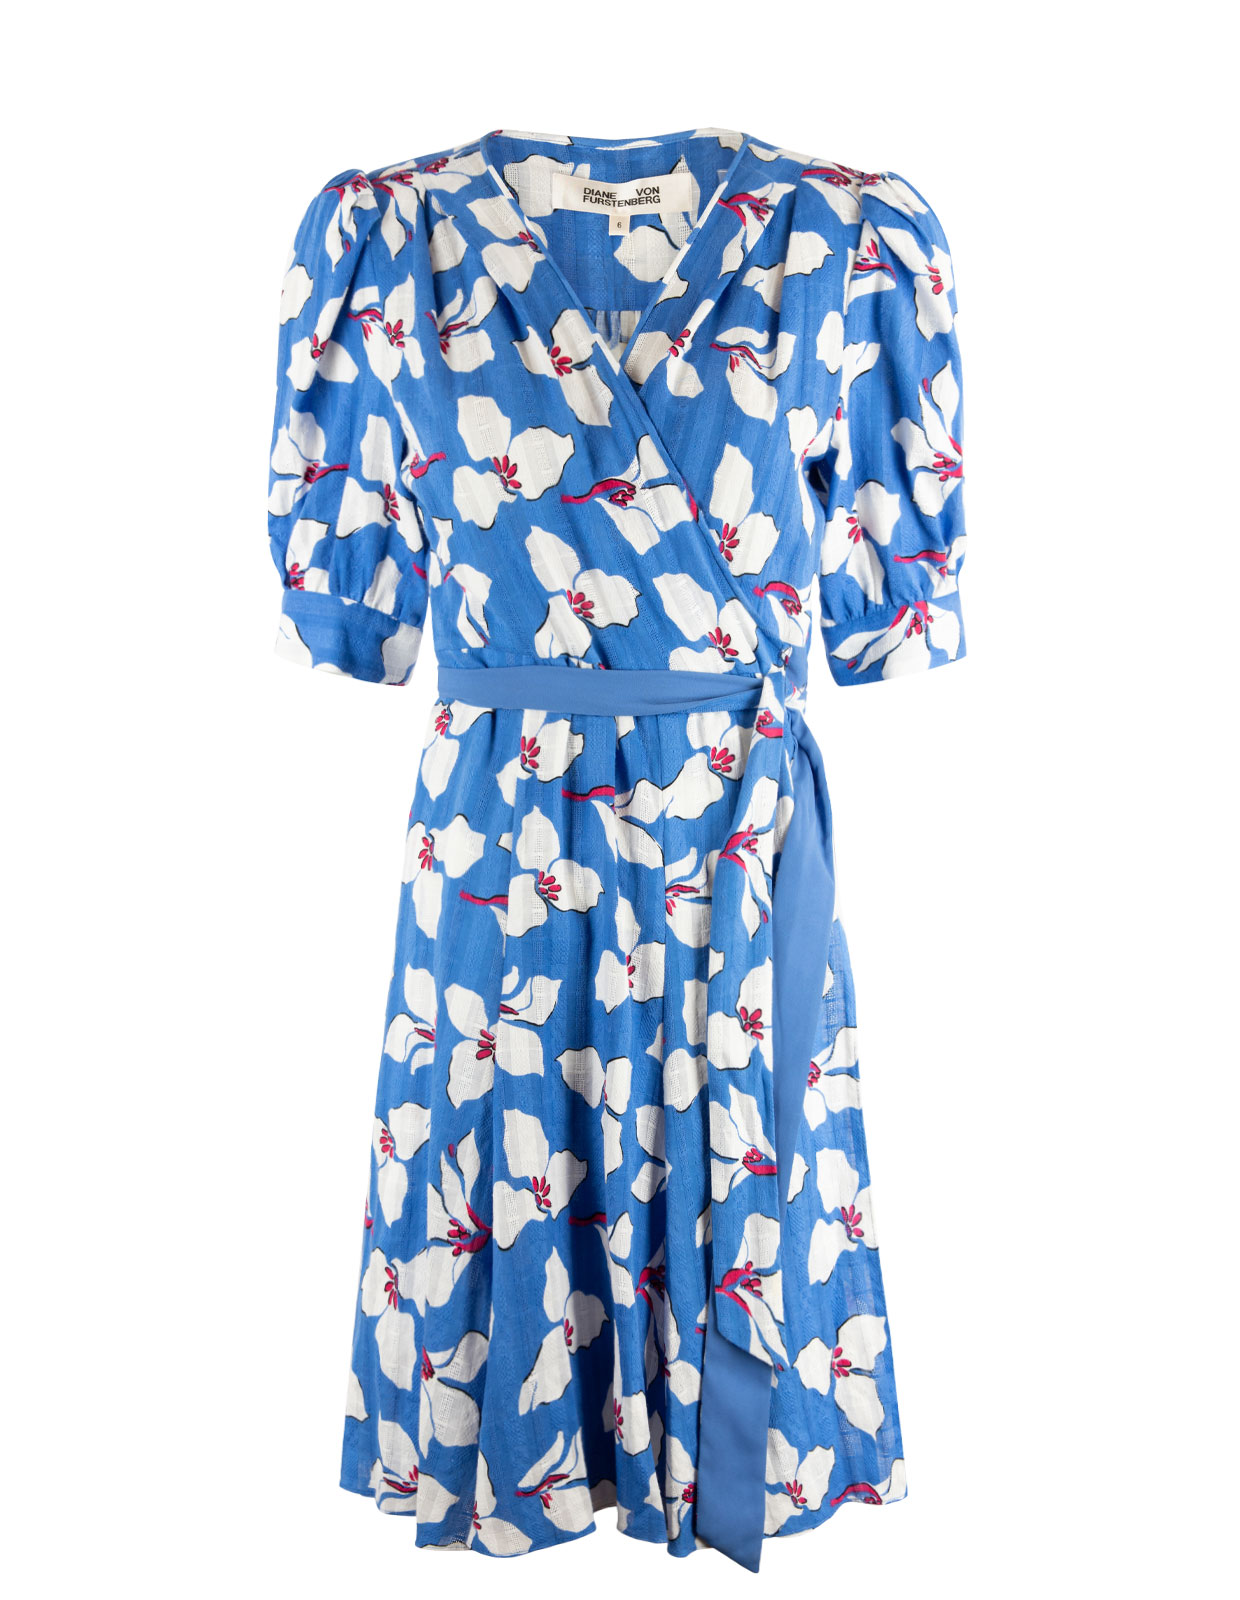 Eldoie Wrap Dress Graphic Flower Blue